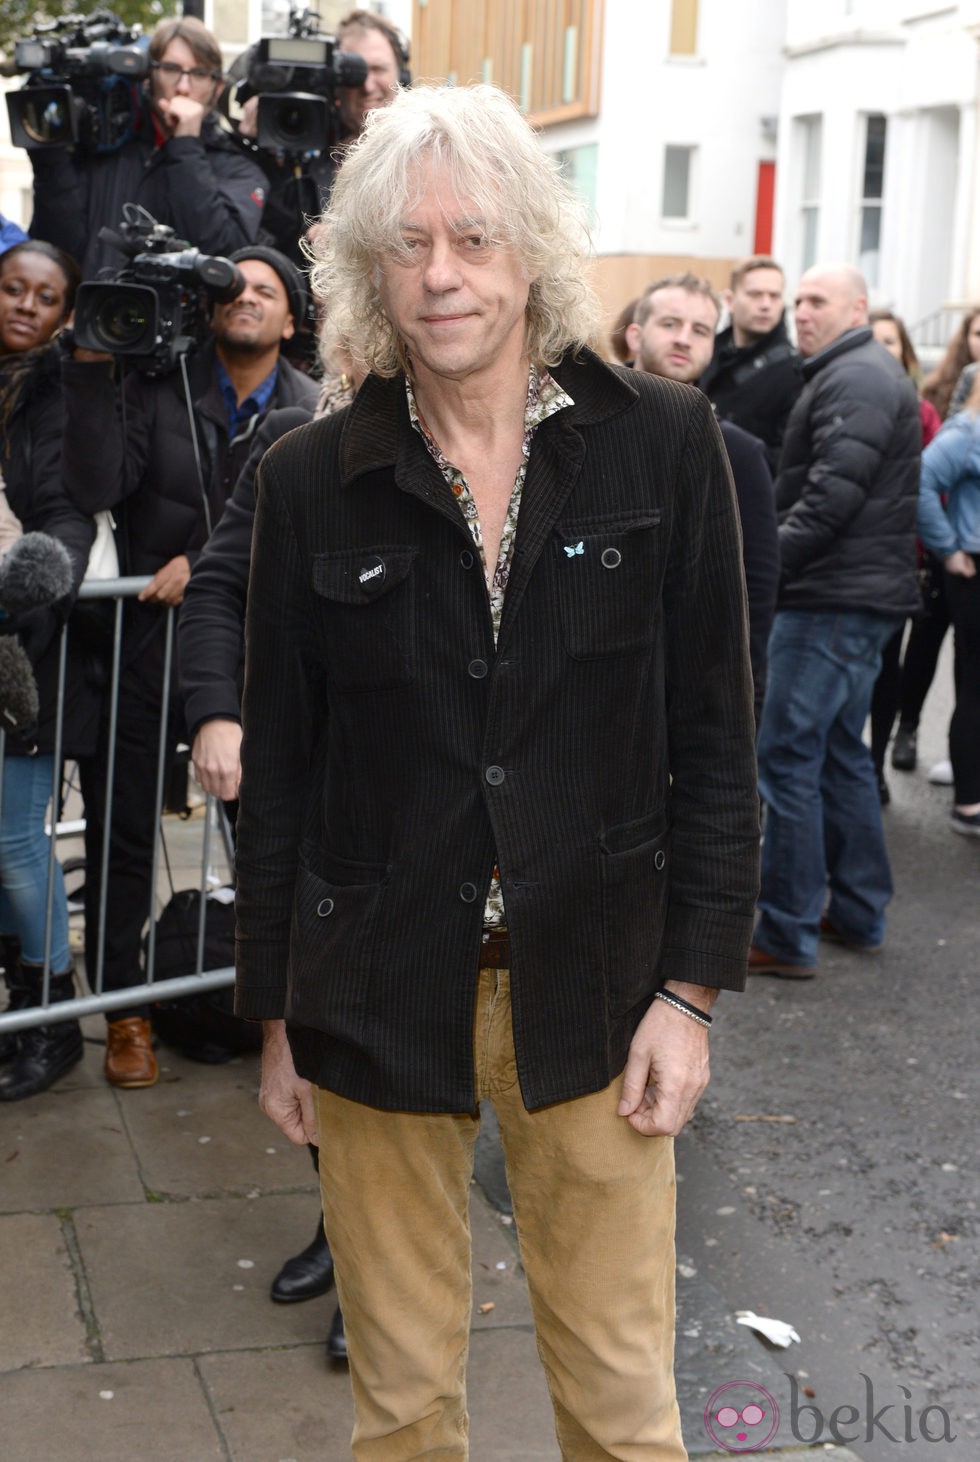 Bob Geldof a su llegada al estudio para grabar la canción en apoyo al ébola